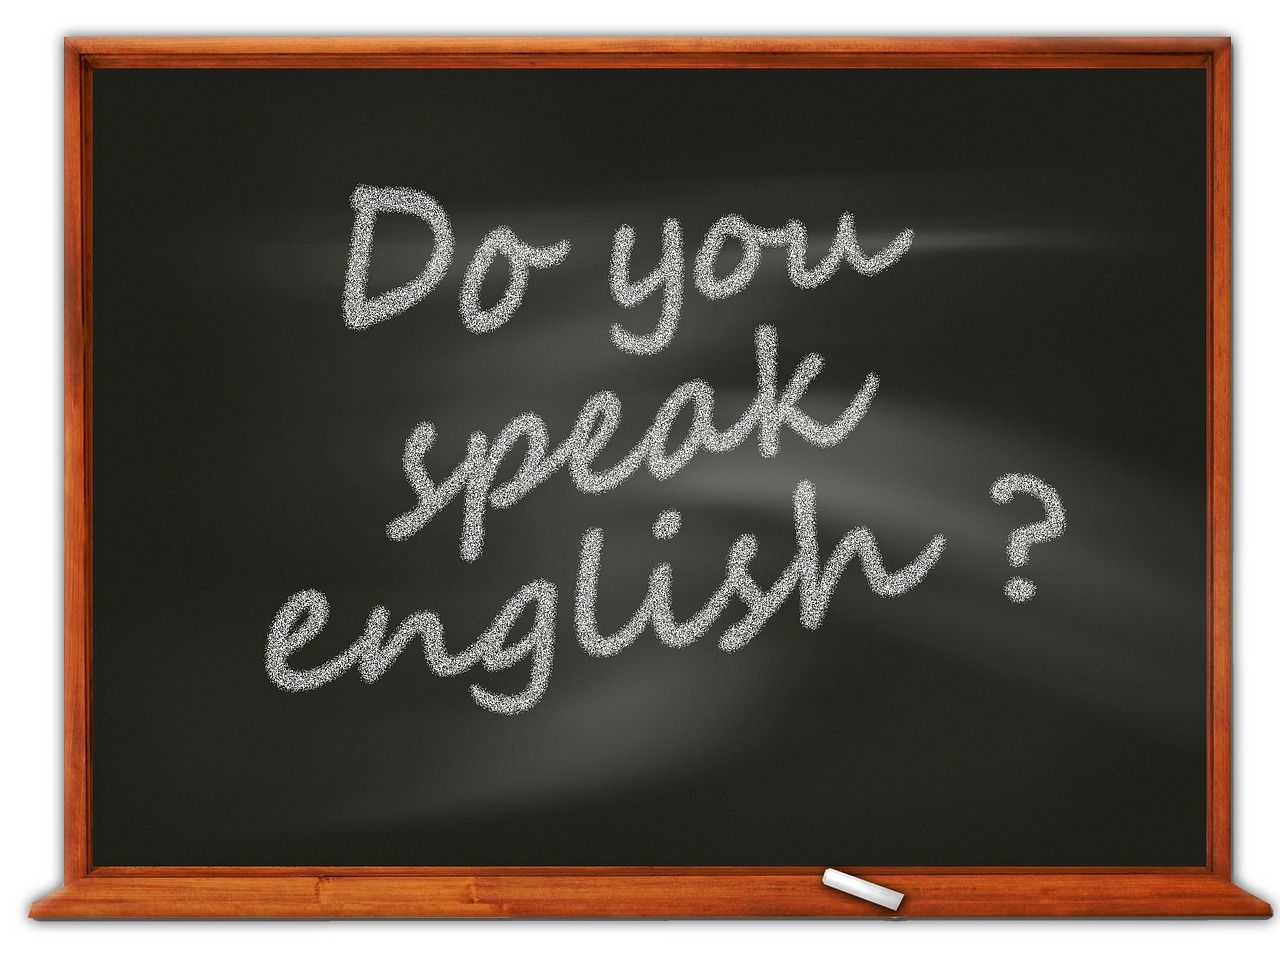 Wie lerne ich schneller englisch? Sprachkurs / -Aufenthalt oder Bücher und Internet?